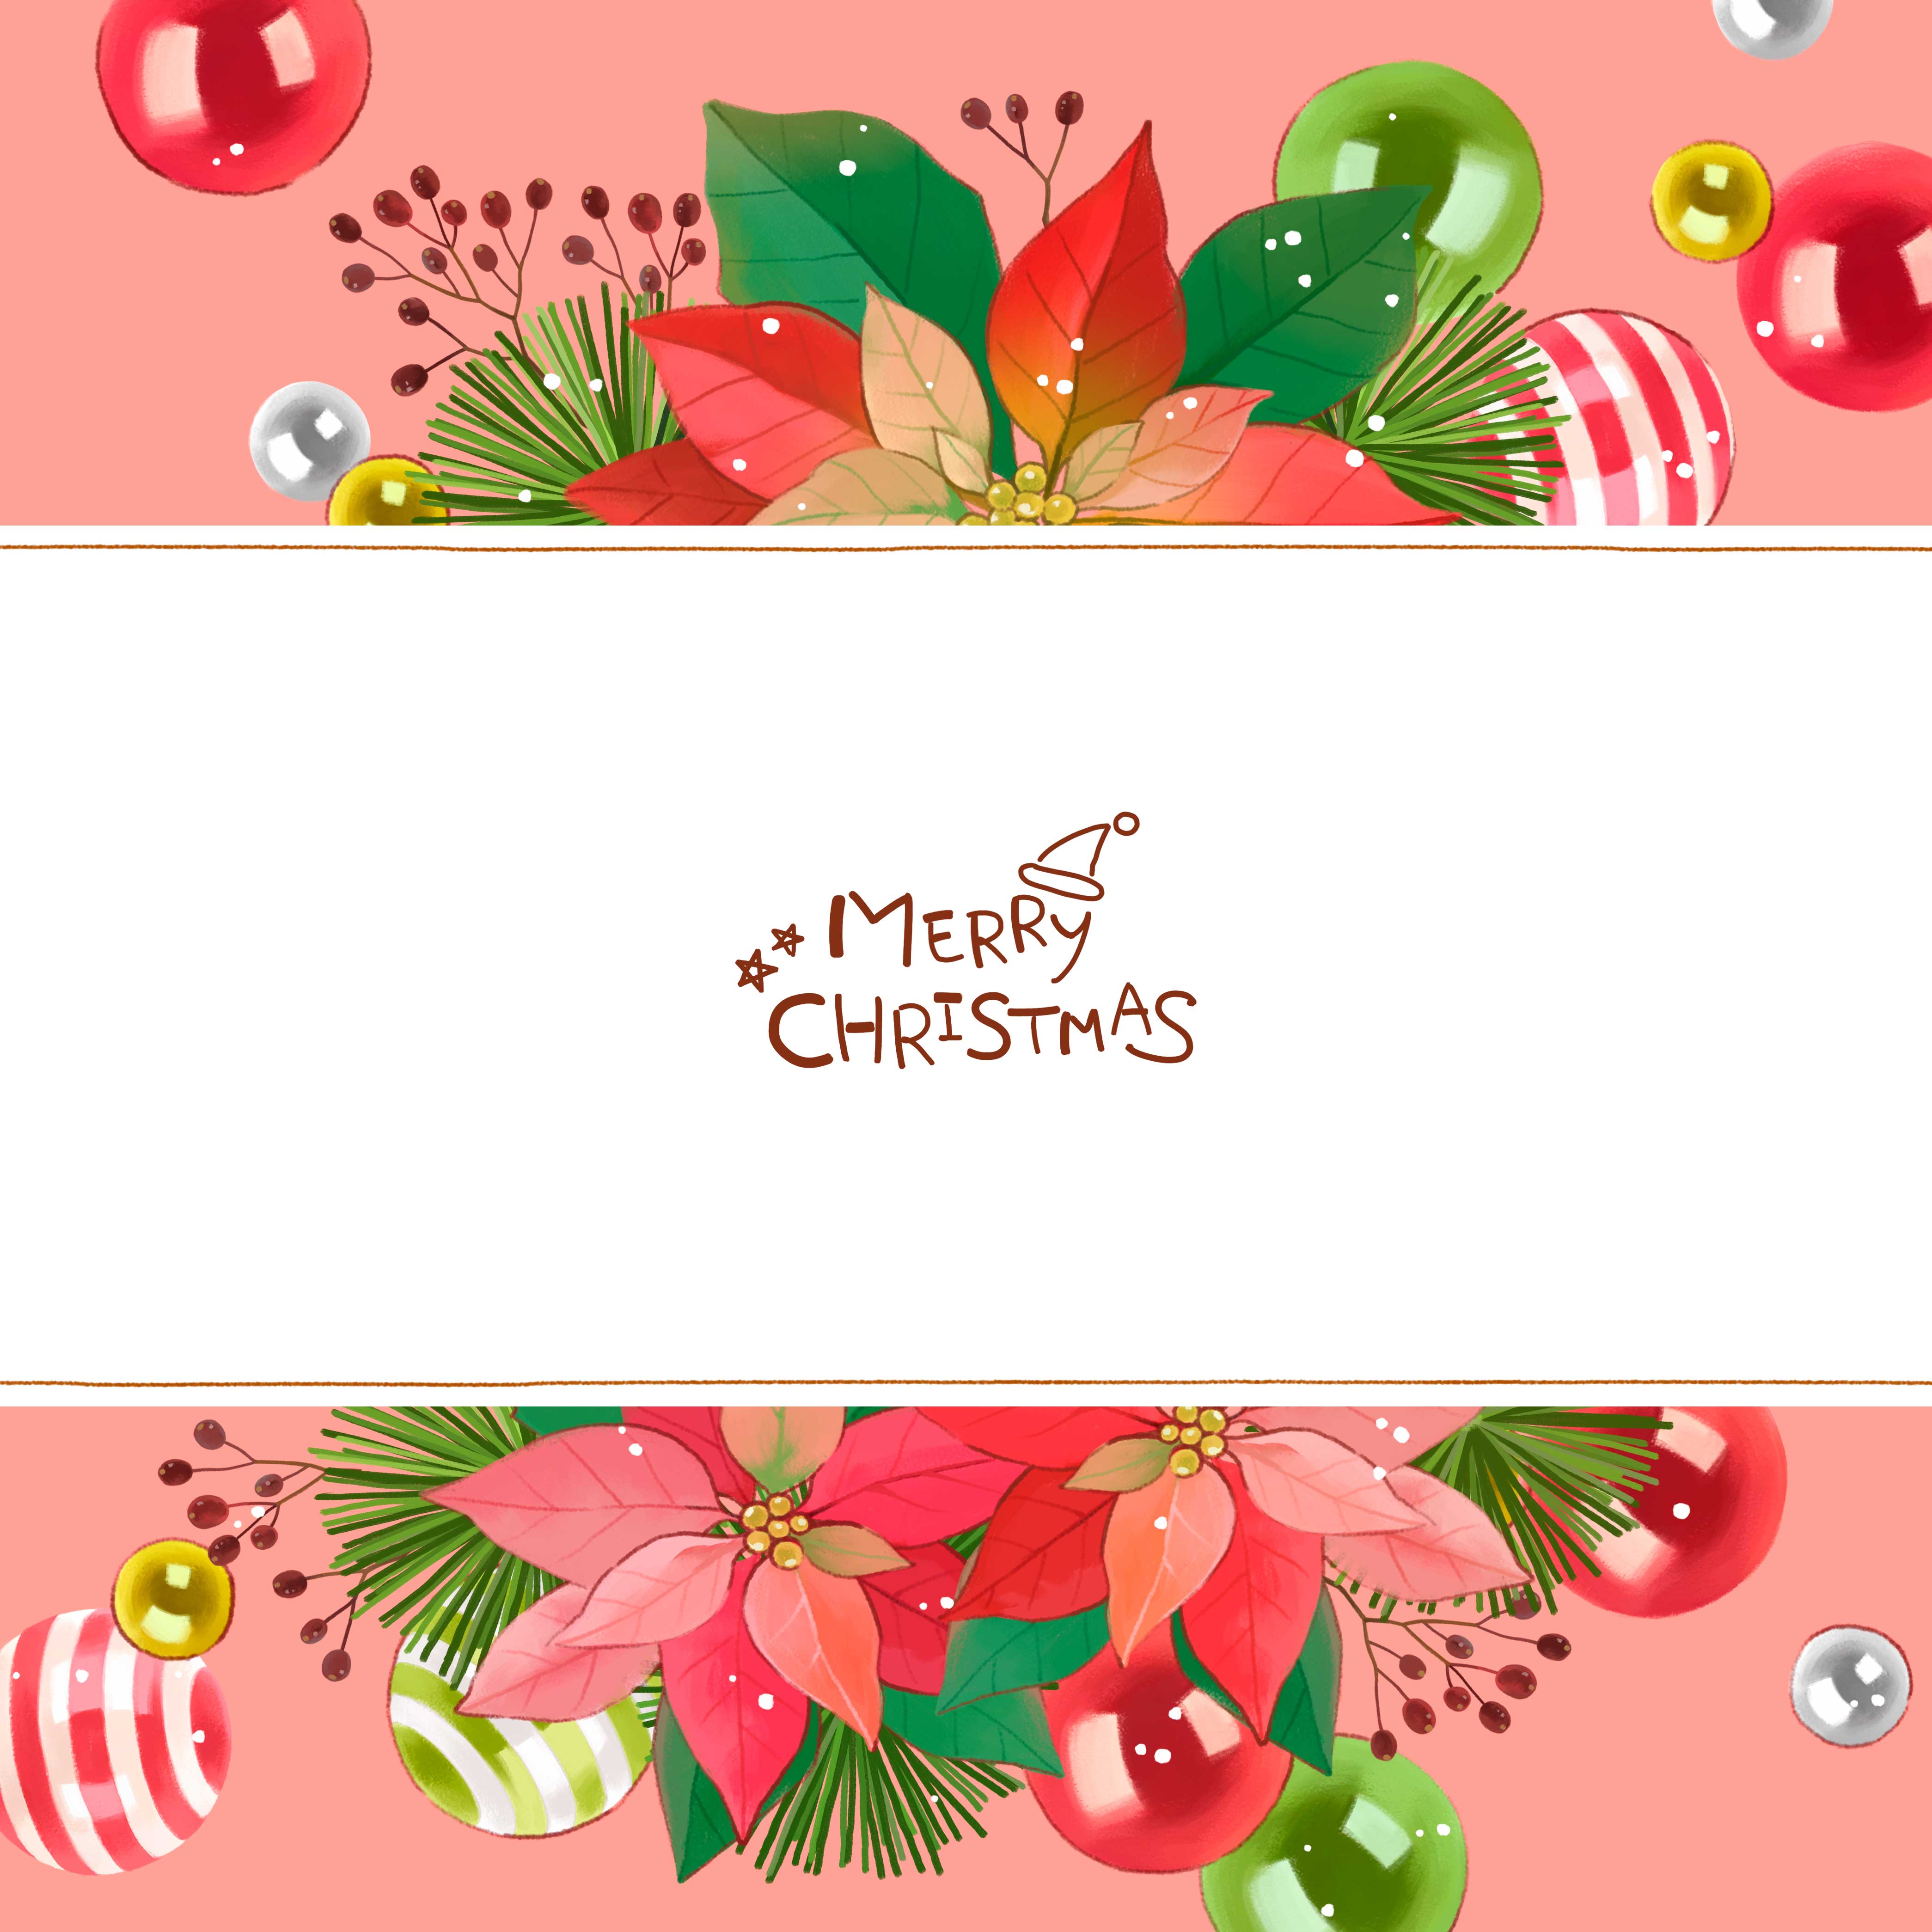 祝福贺卡圣诞装饰海报设计psd素材设计素材模板